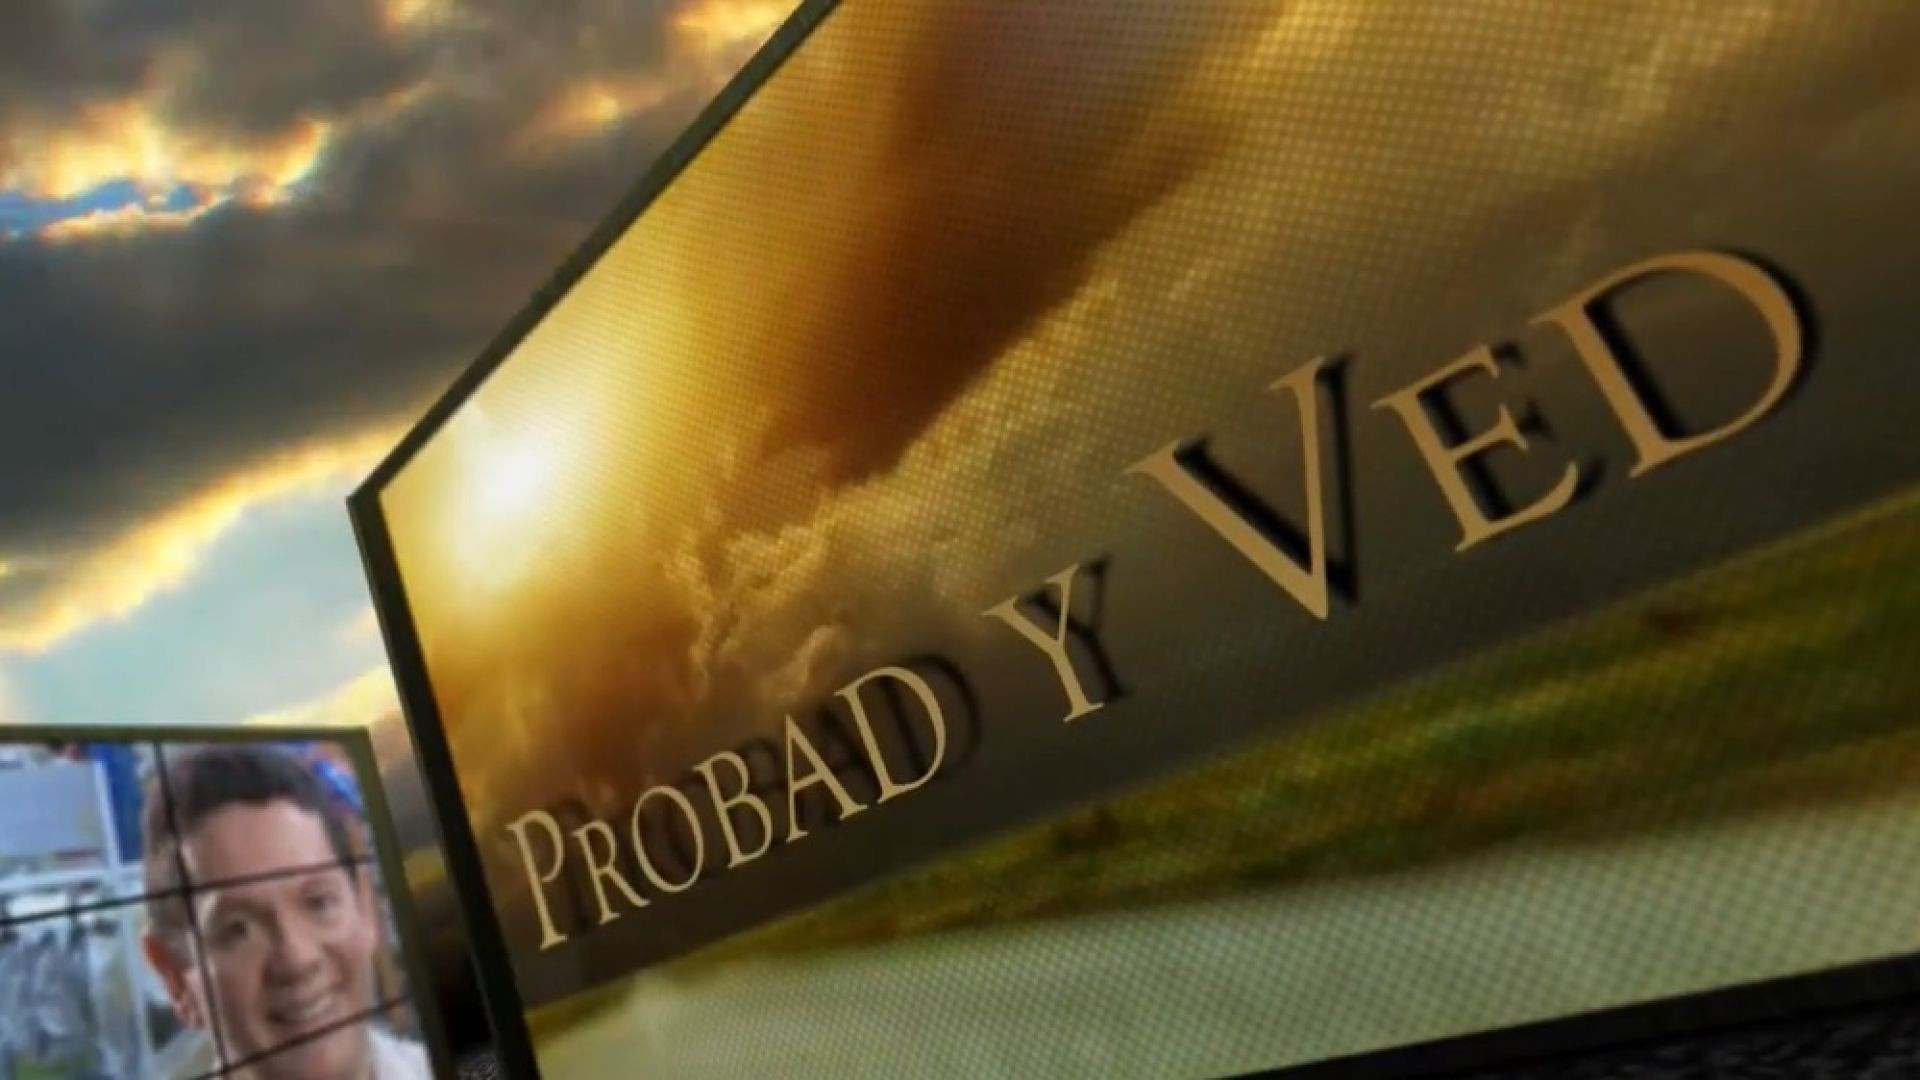 Probad y Ved 2013 - El mayordomo fiel - 19/Ene